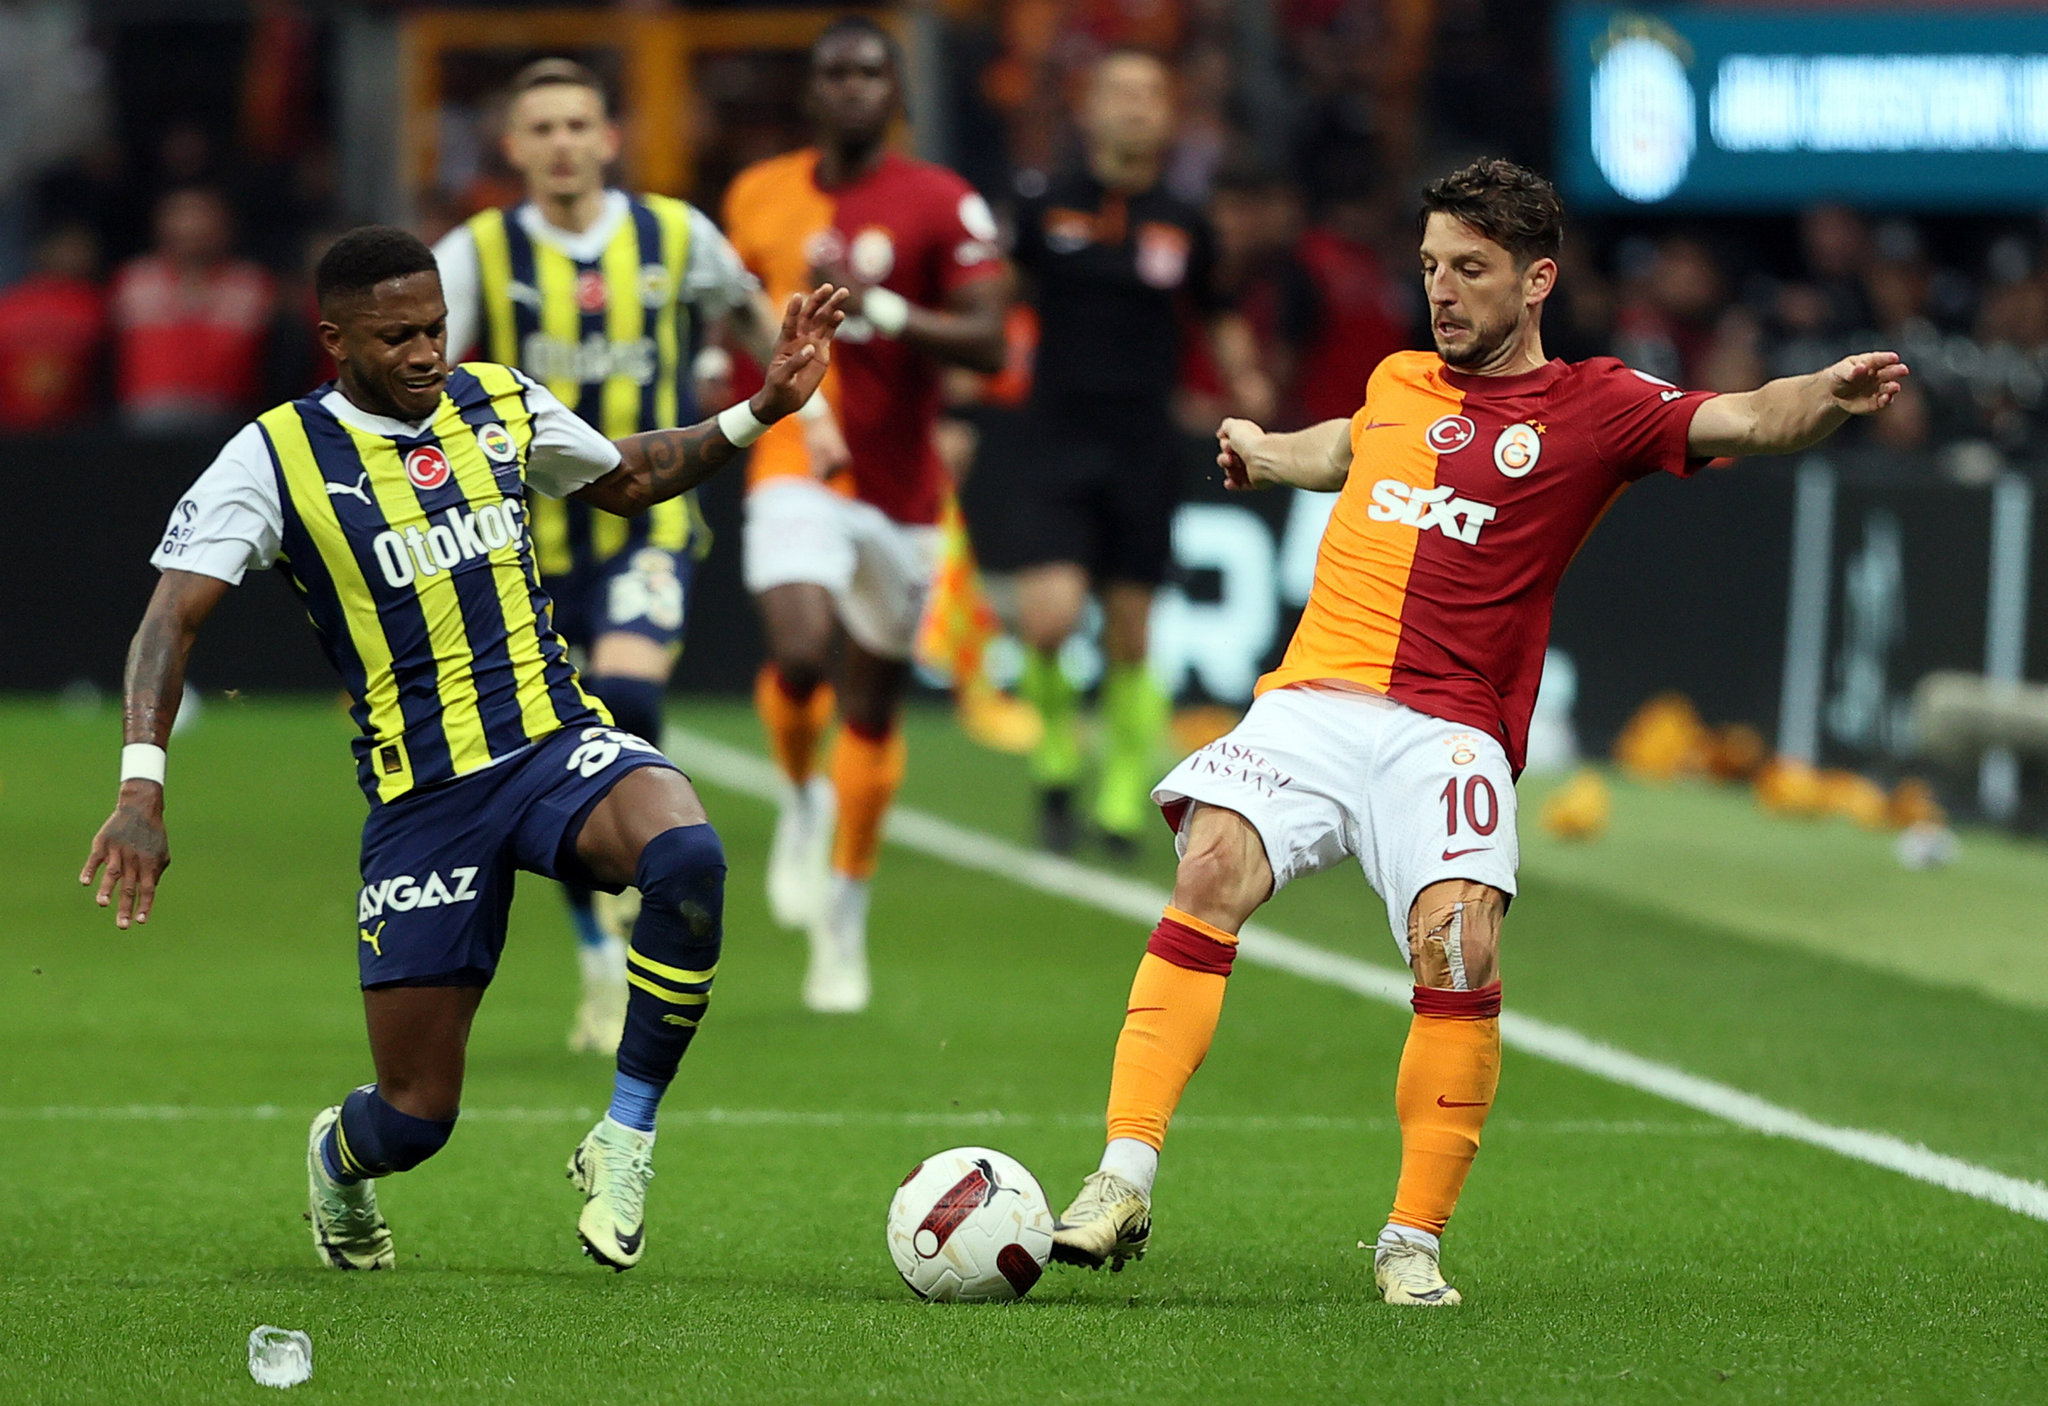 Okan Buruk’tan Fenerbahçe maçı sonrası dev neşter! Galatasaray’da 8 futbolcuyla yollar ayrılıyor